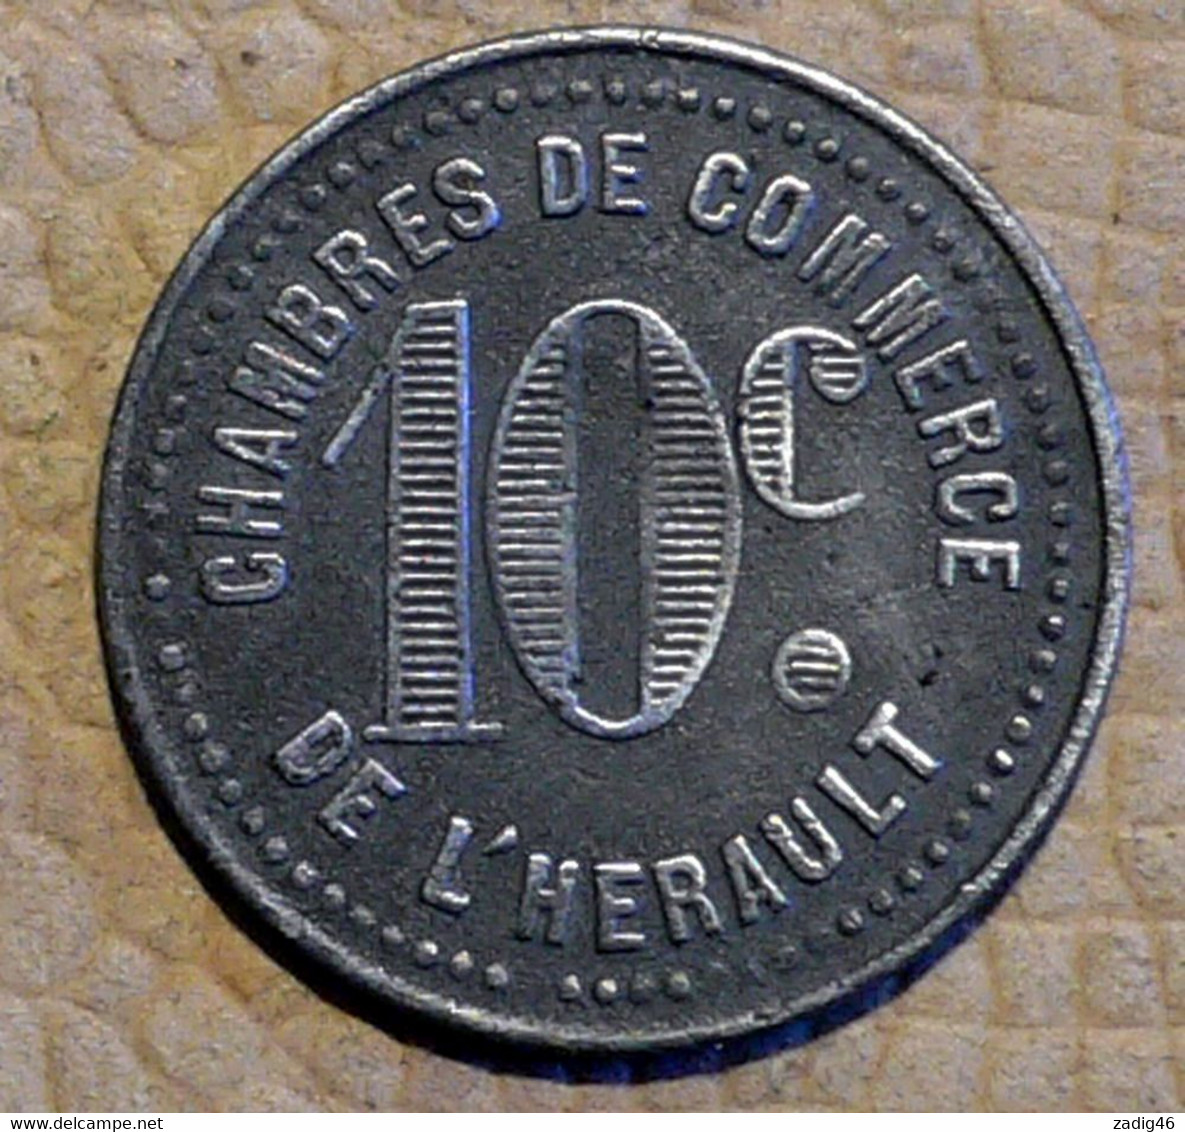 CHAMBRES DE COMMERCE DE L'HERAULT - PIECE DE 10 CENTIMES SANS DATE - Monétaires / De Nécessité